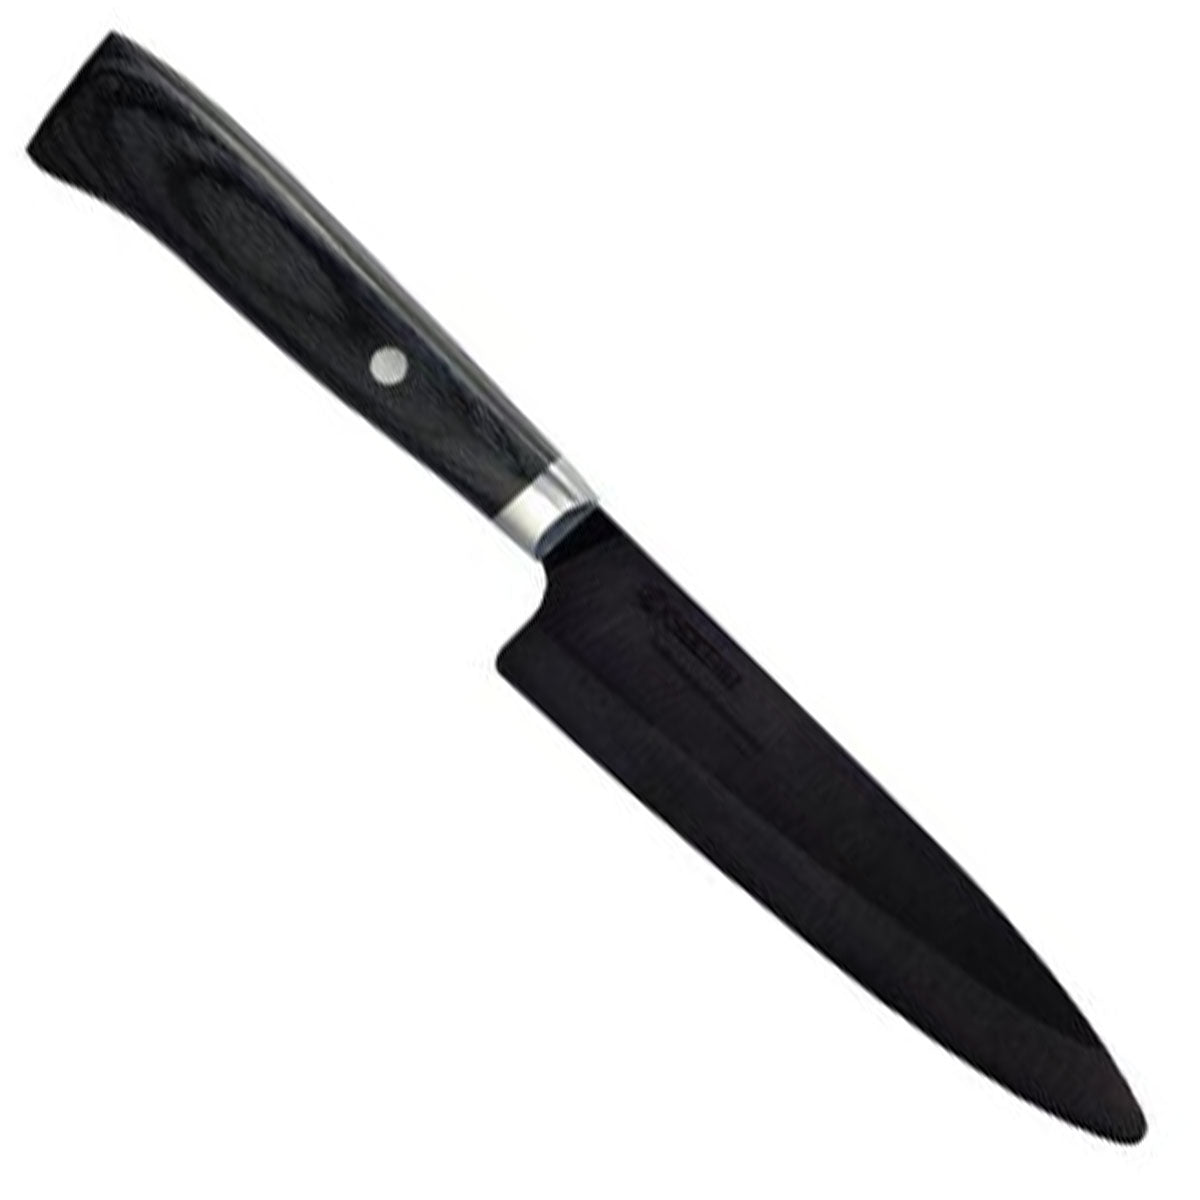 KYOCERA > Kyocera ultra-sharp lightweight ceramic slicing knife